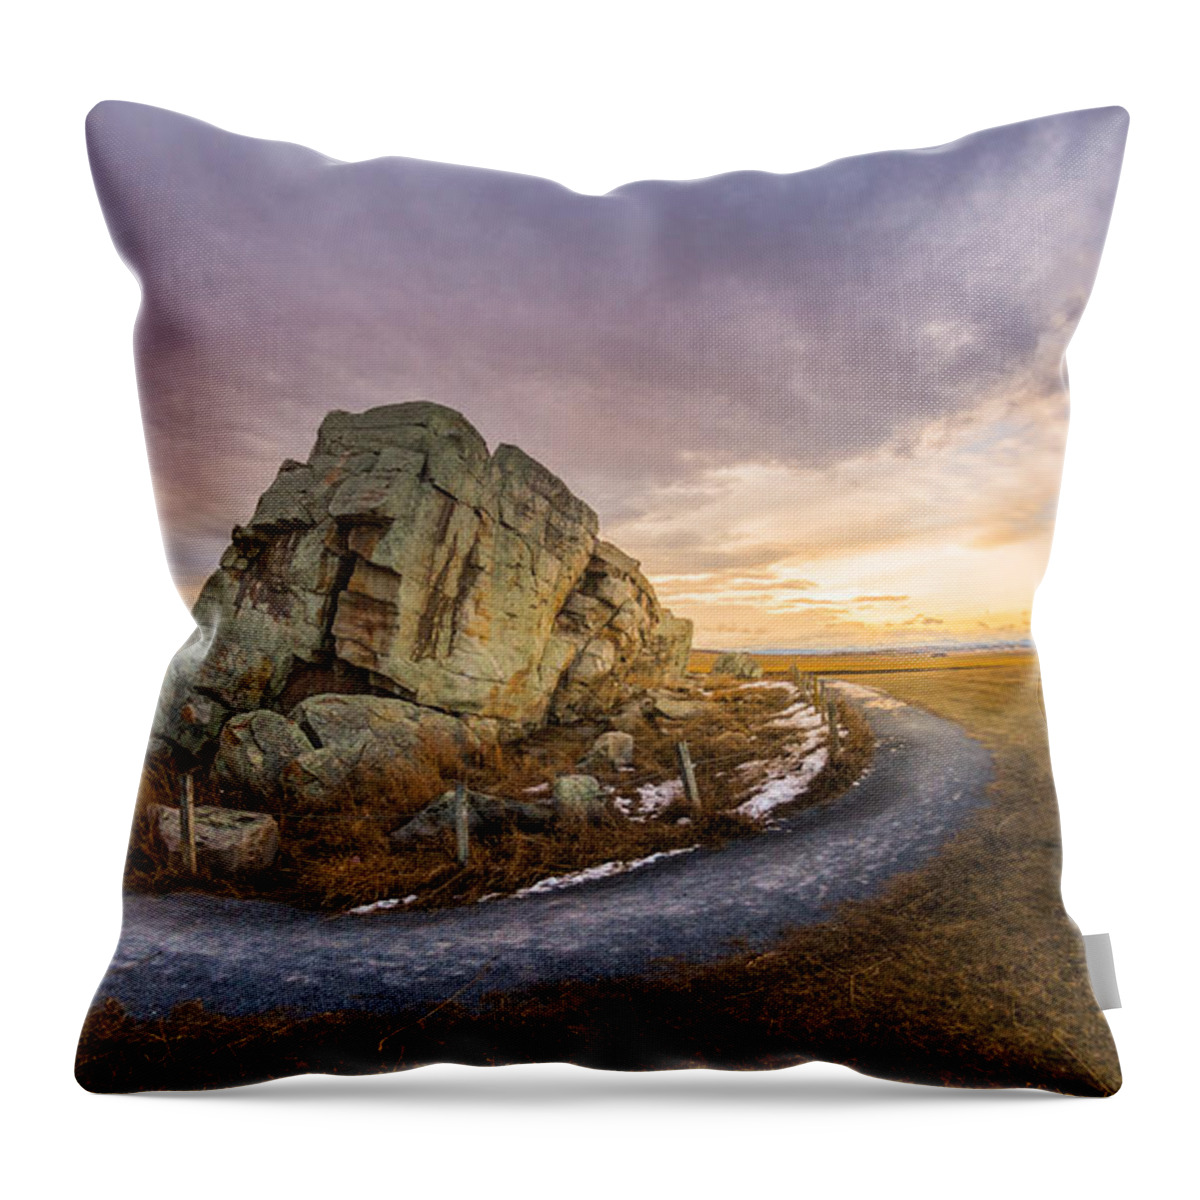 Okotoks Big Rock Erratic Throw Pillow by Dwayne Schnell - Pixels